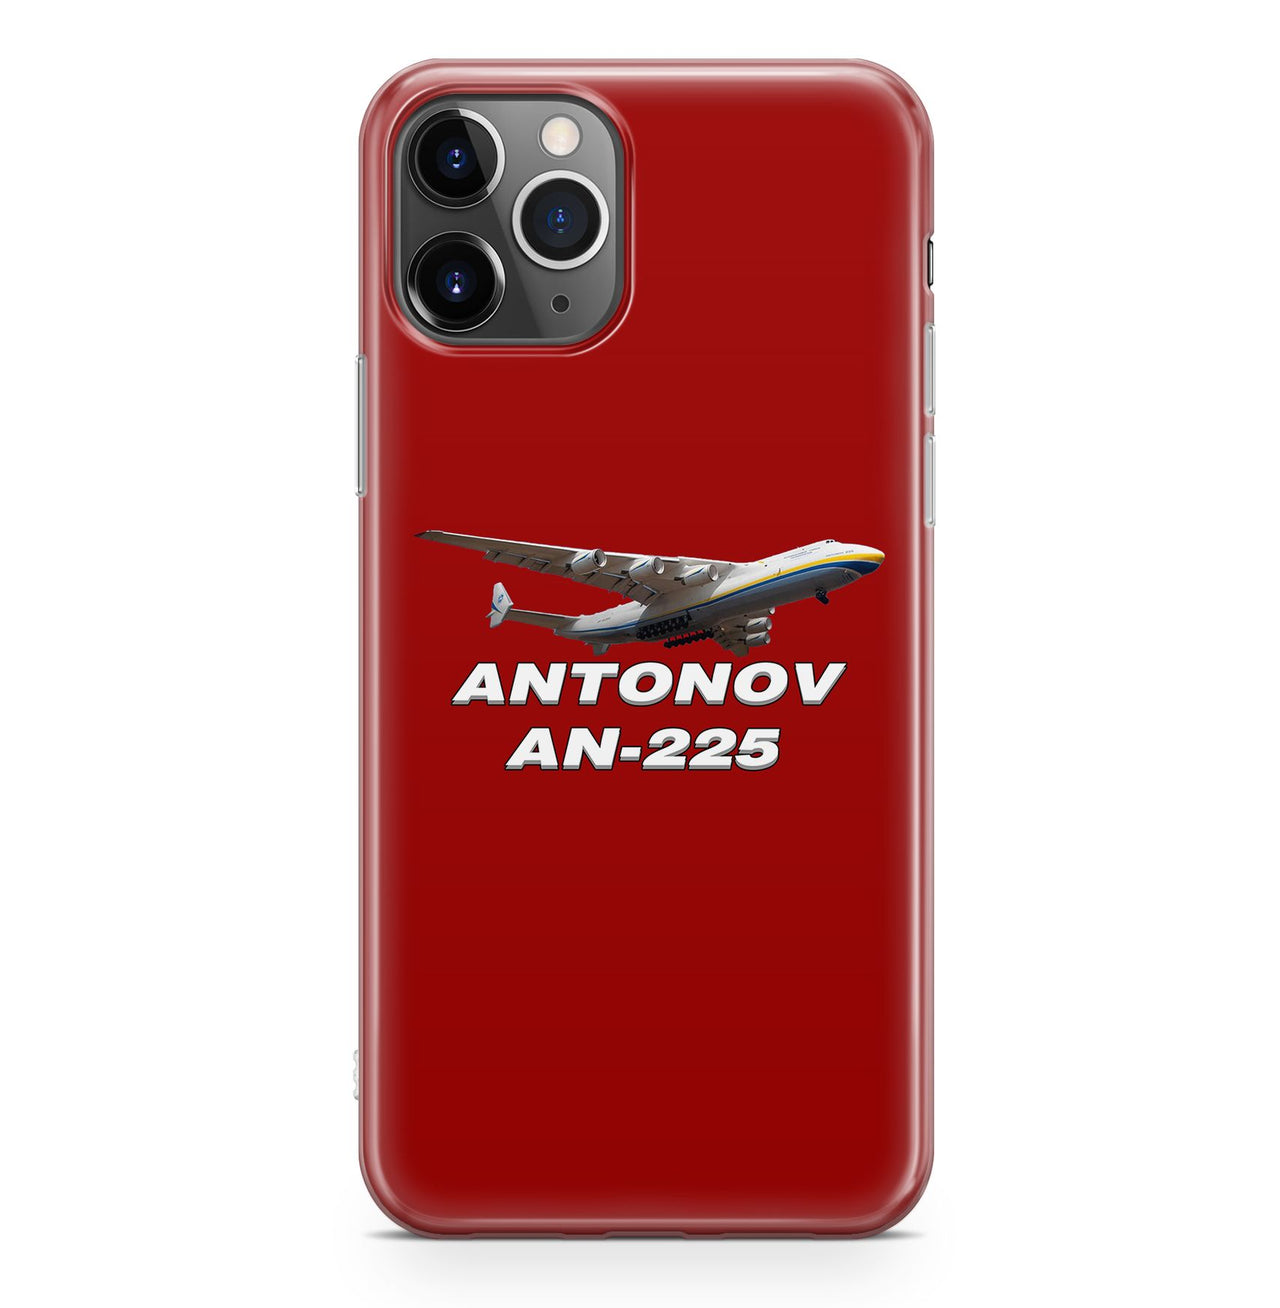 Antonov AN-225 (15) Designed iPhone Cases